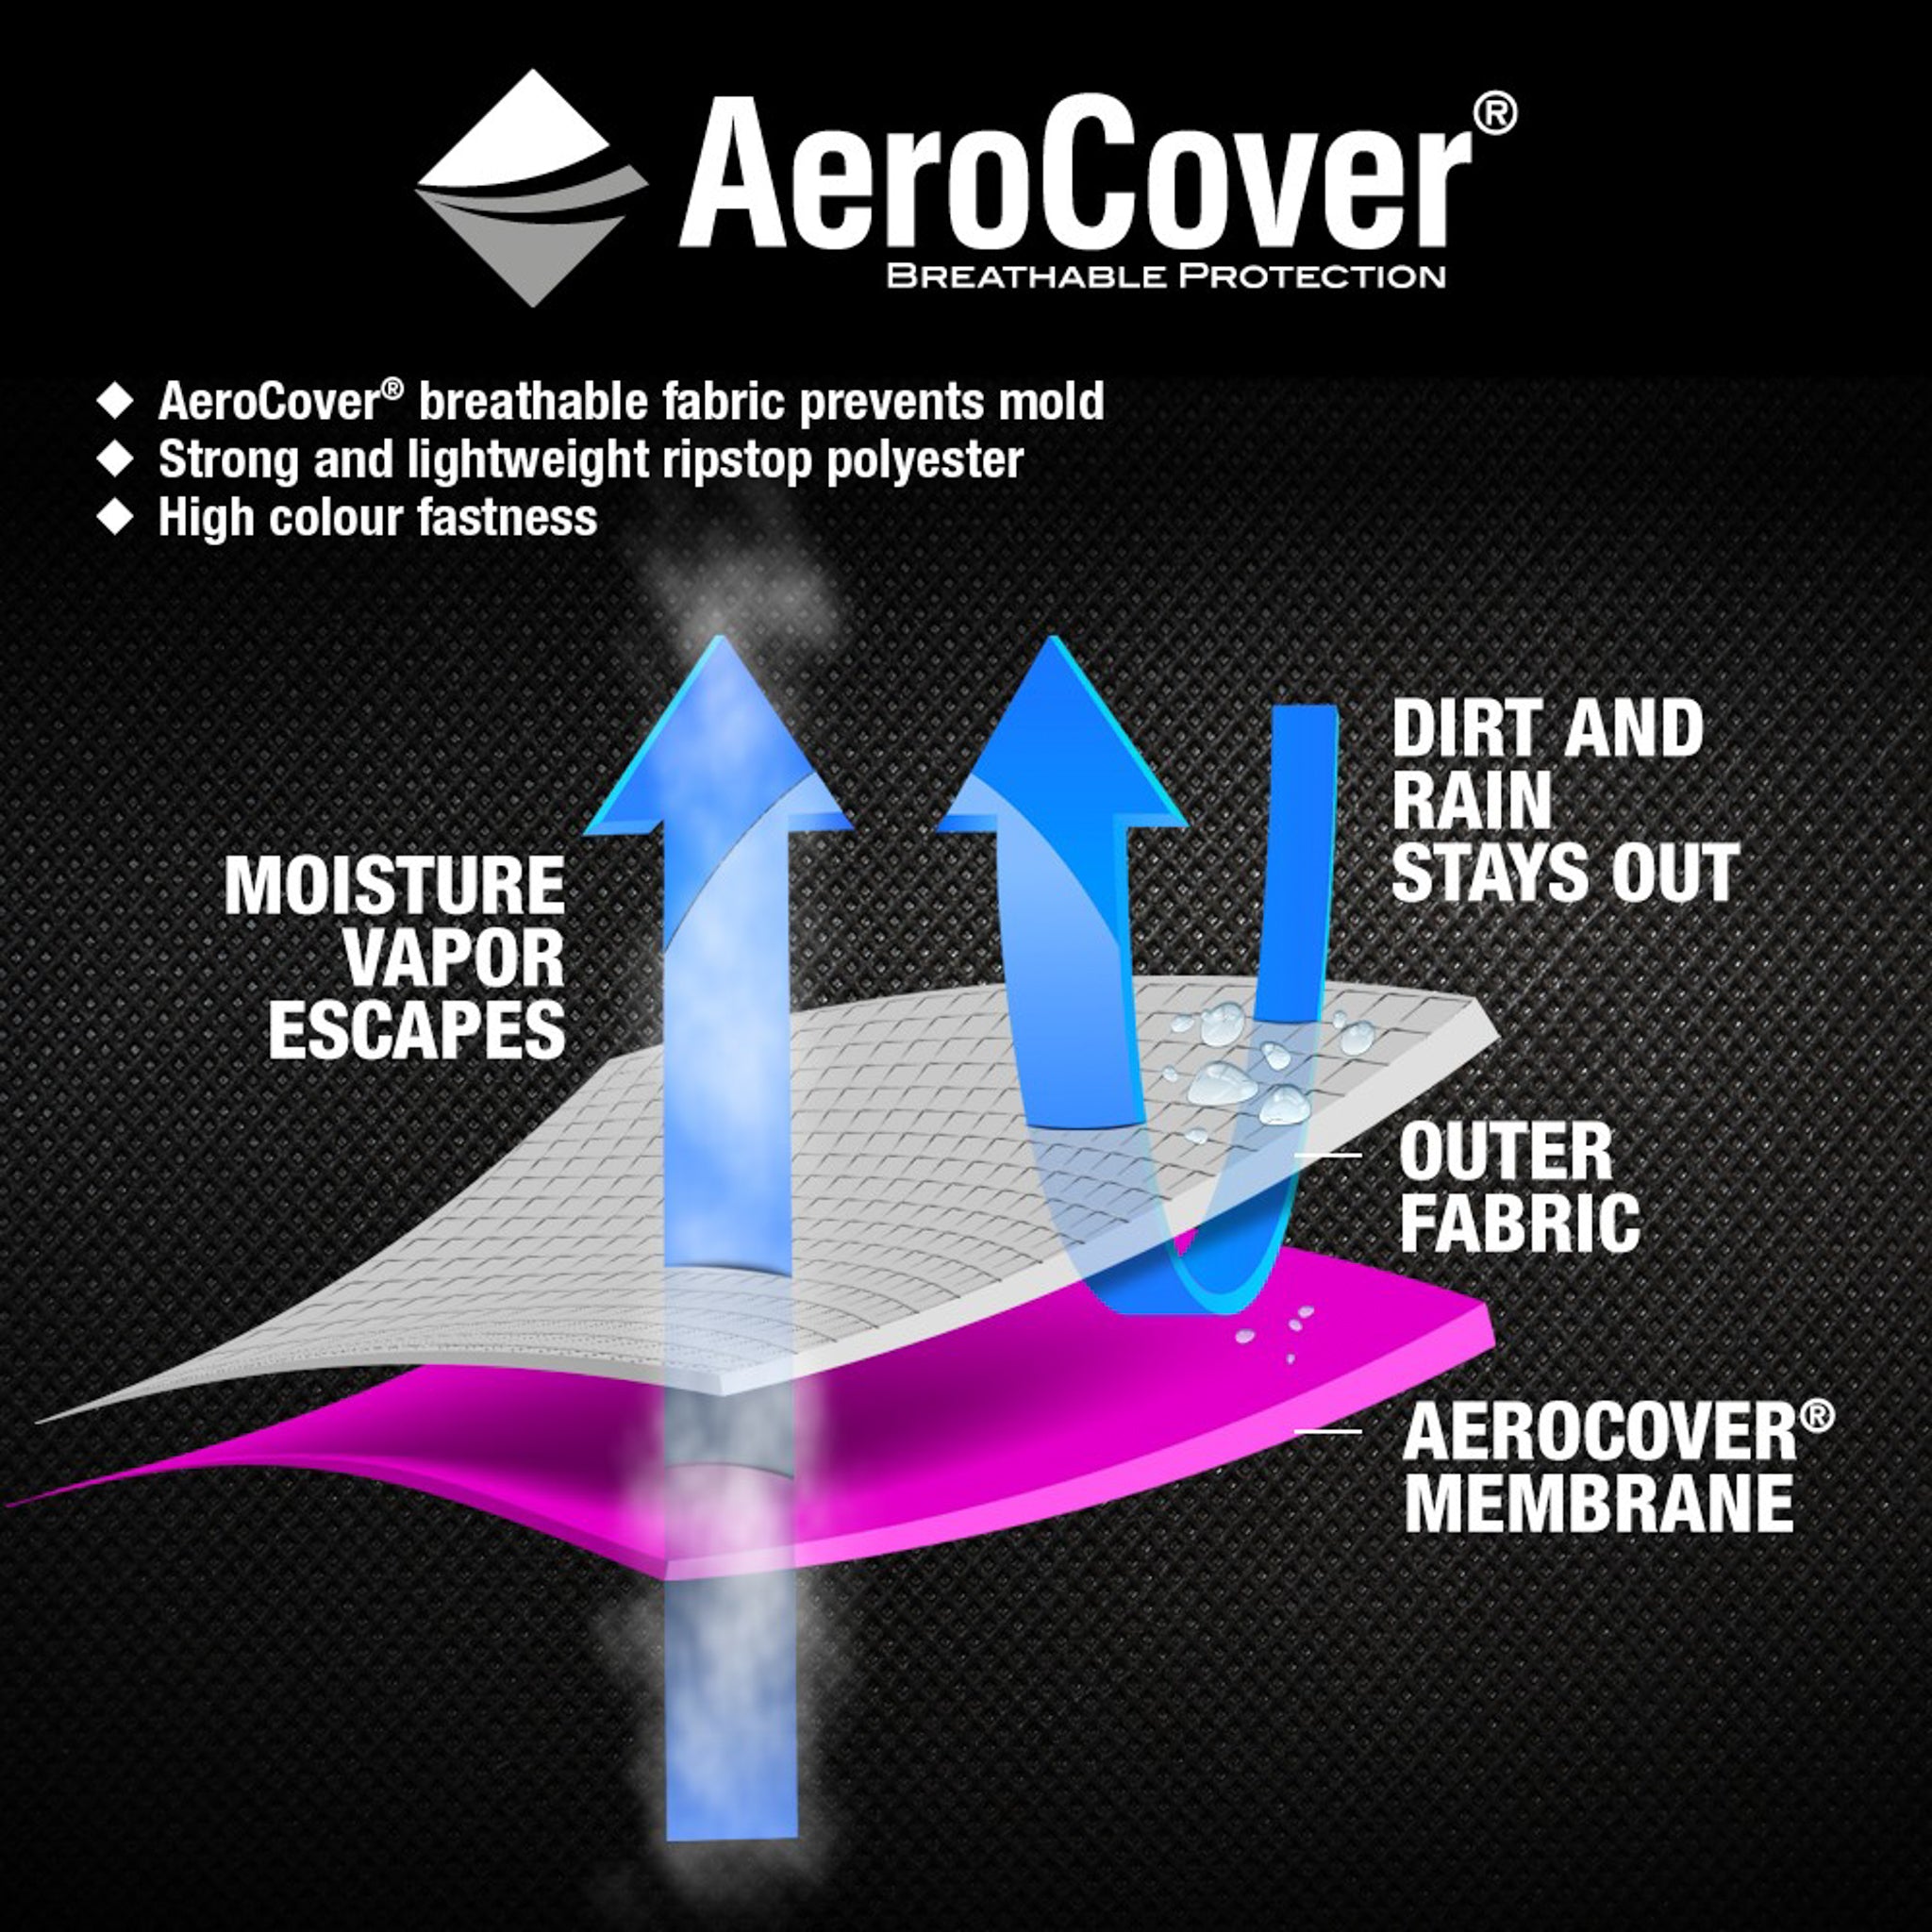 AeroCover - Garden Set Oblong Cover 180x190x85cm high